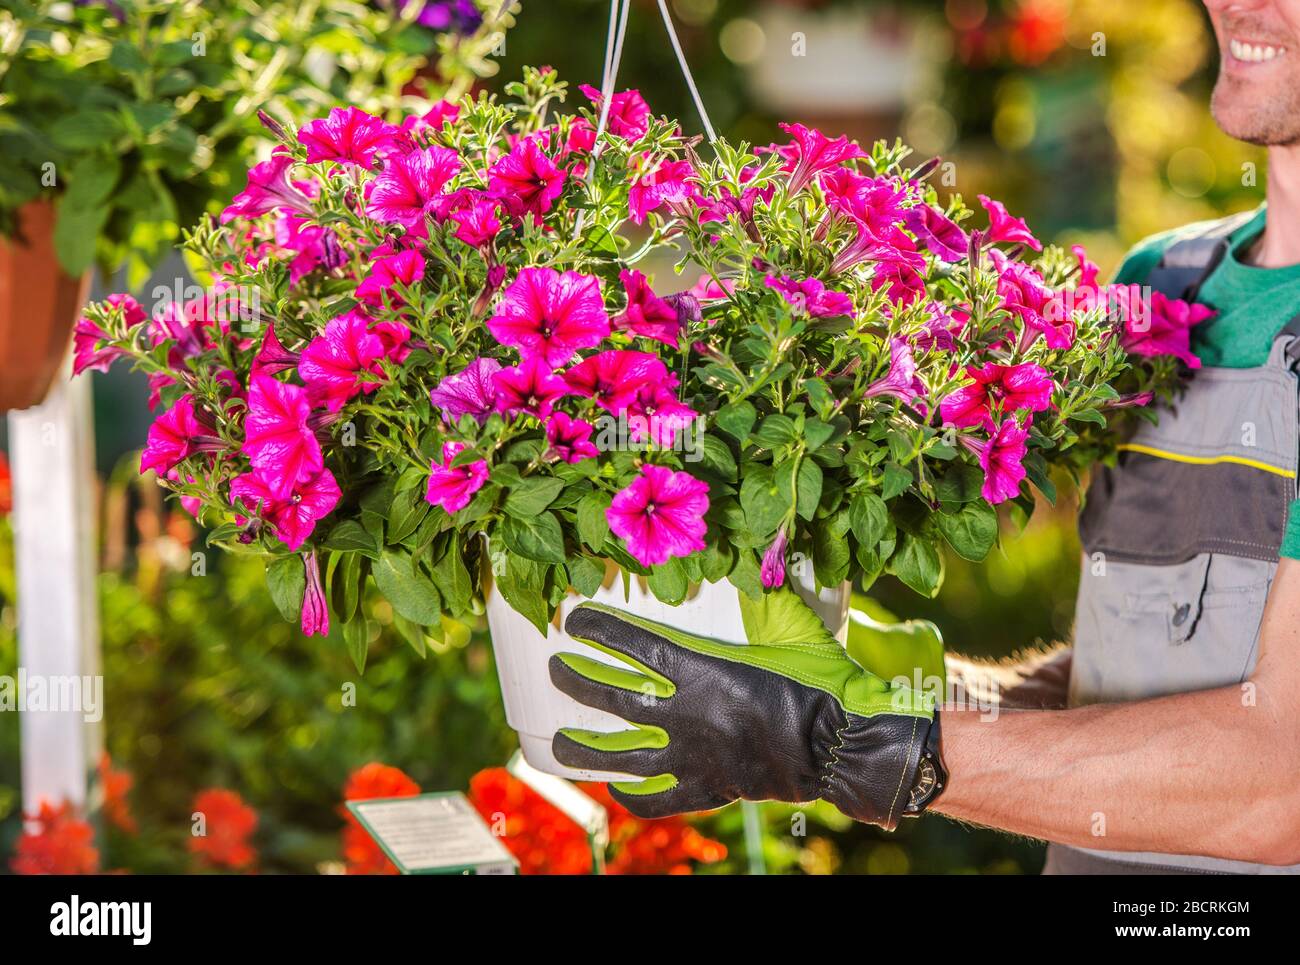 Kaukasier Small Business Owner, Die Blumen Blühen. Gartenindustrie Thema. Stockfoto